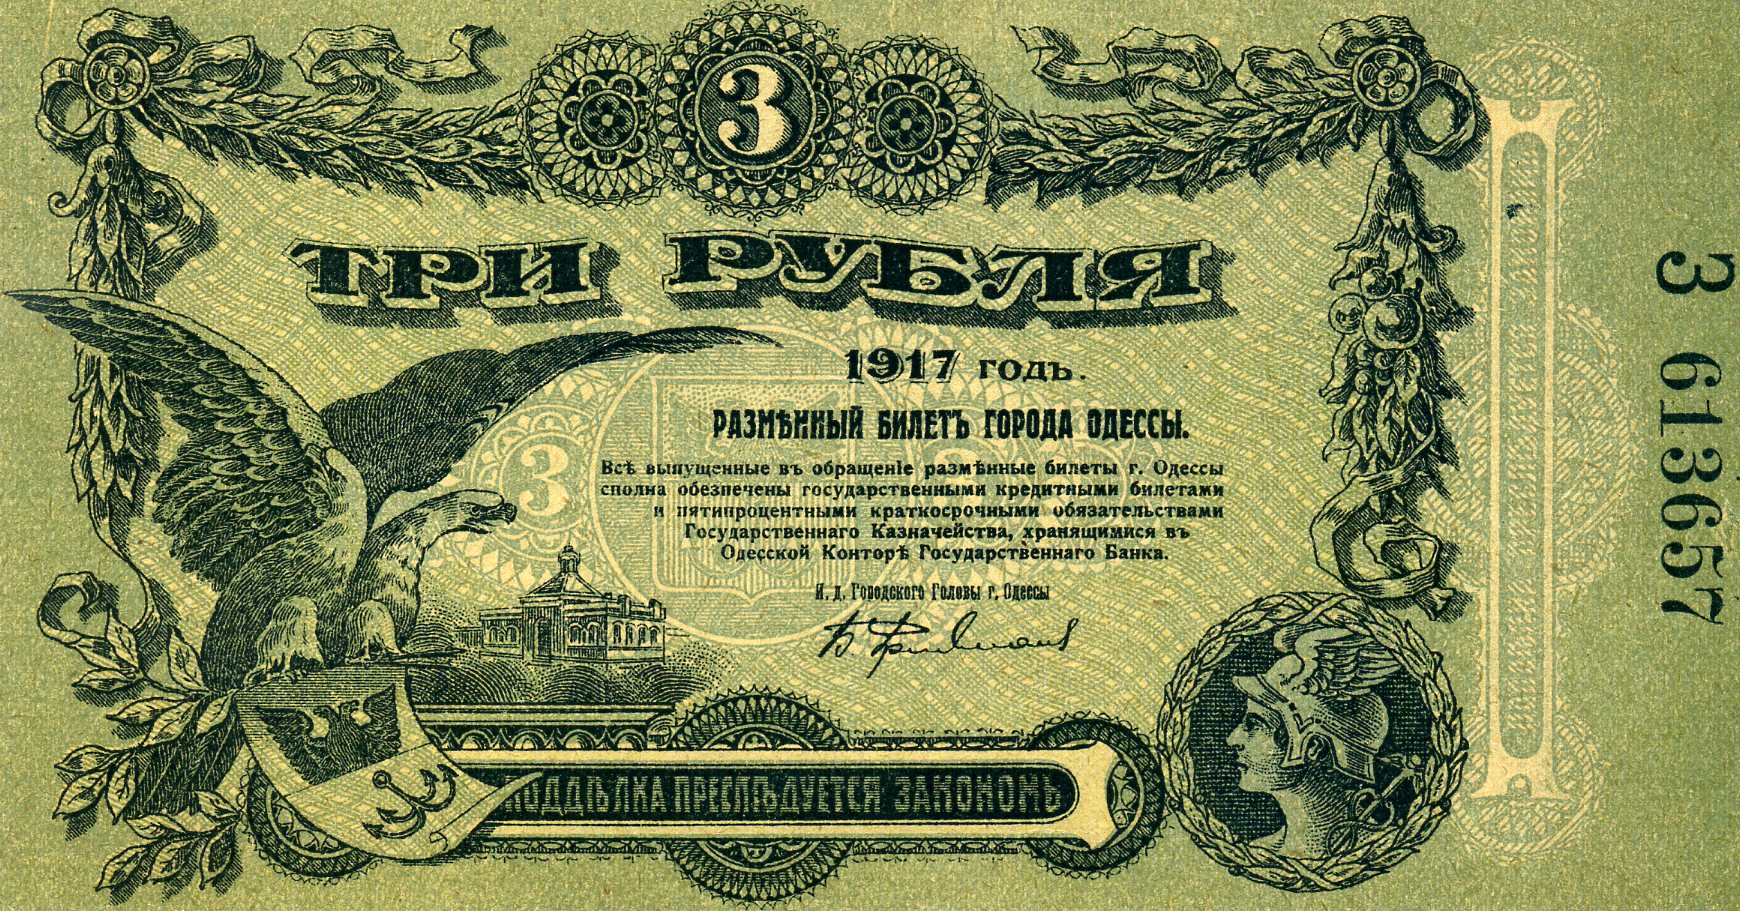 Разменный билет города Одессы 3 рубля 1917 года. Аверс. Реферат Рефератович.